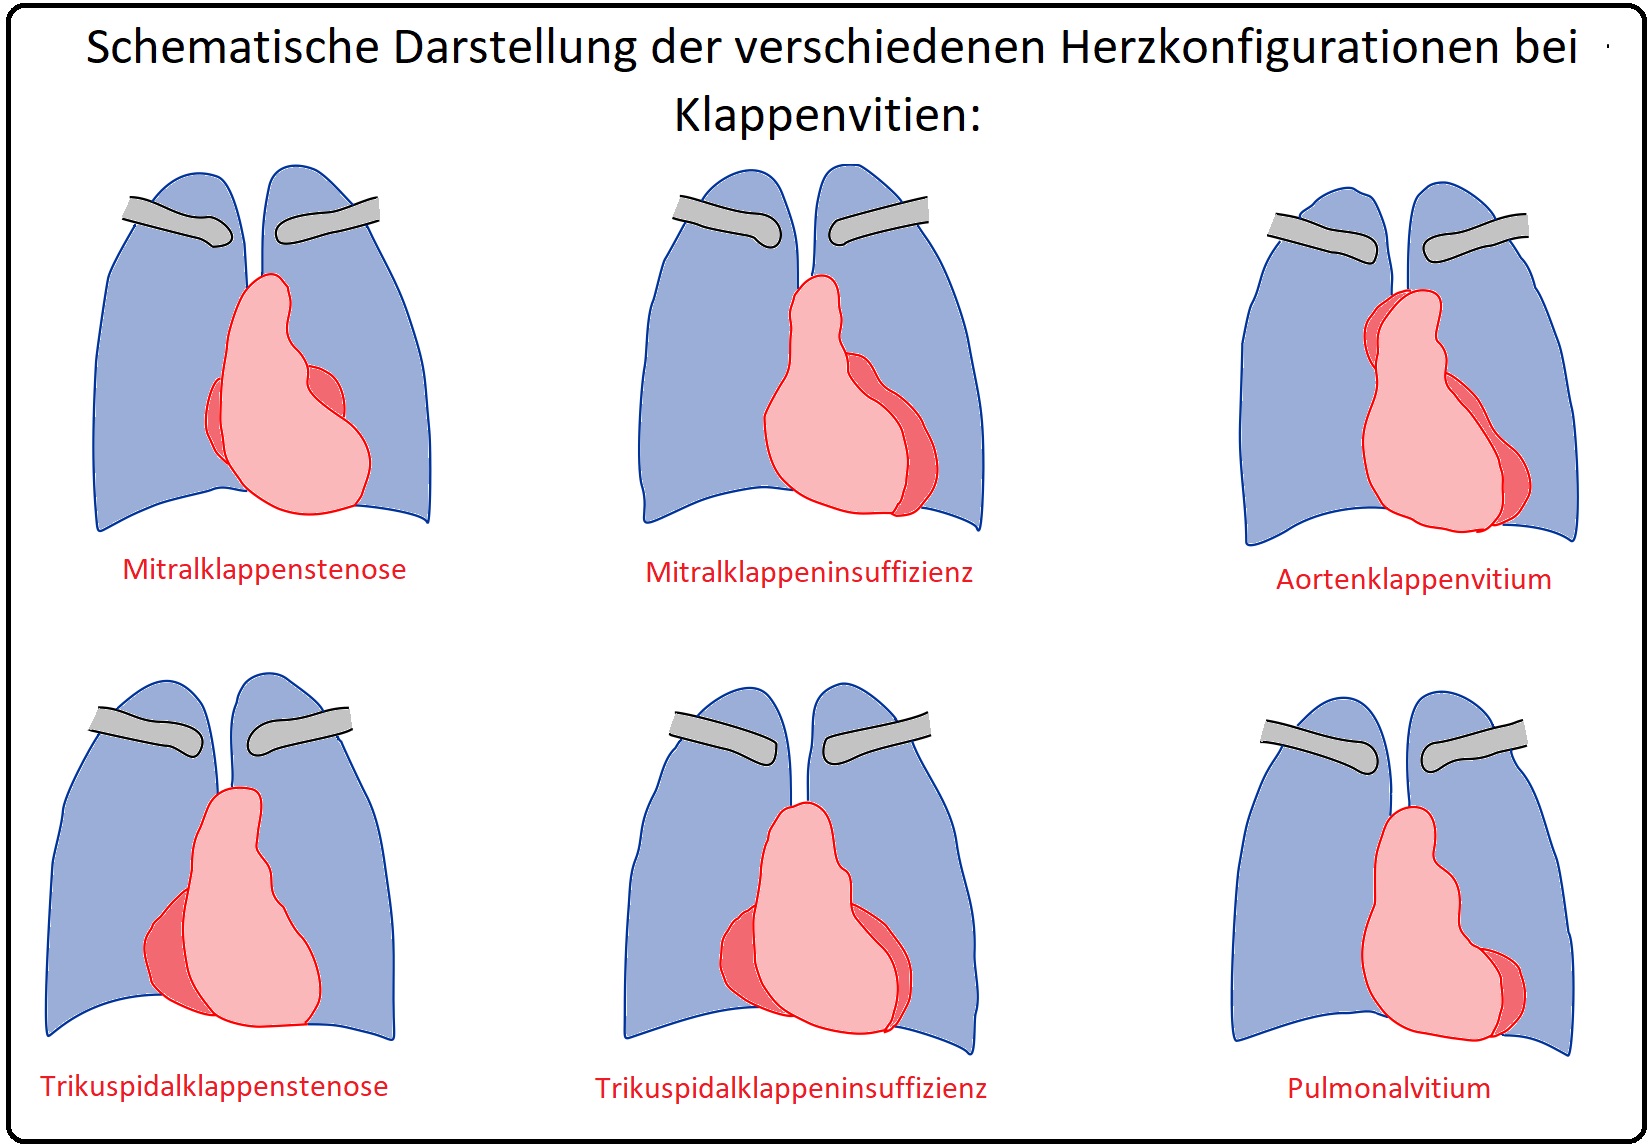 830 Schematische Darstellung der verschiedenen Herzkonfigurationen bei Klappenvitien